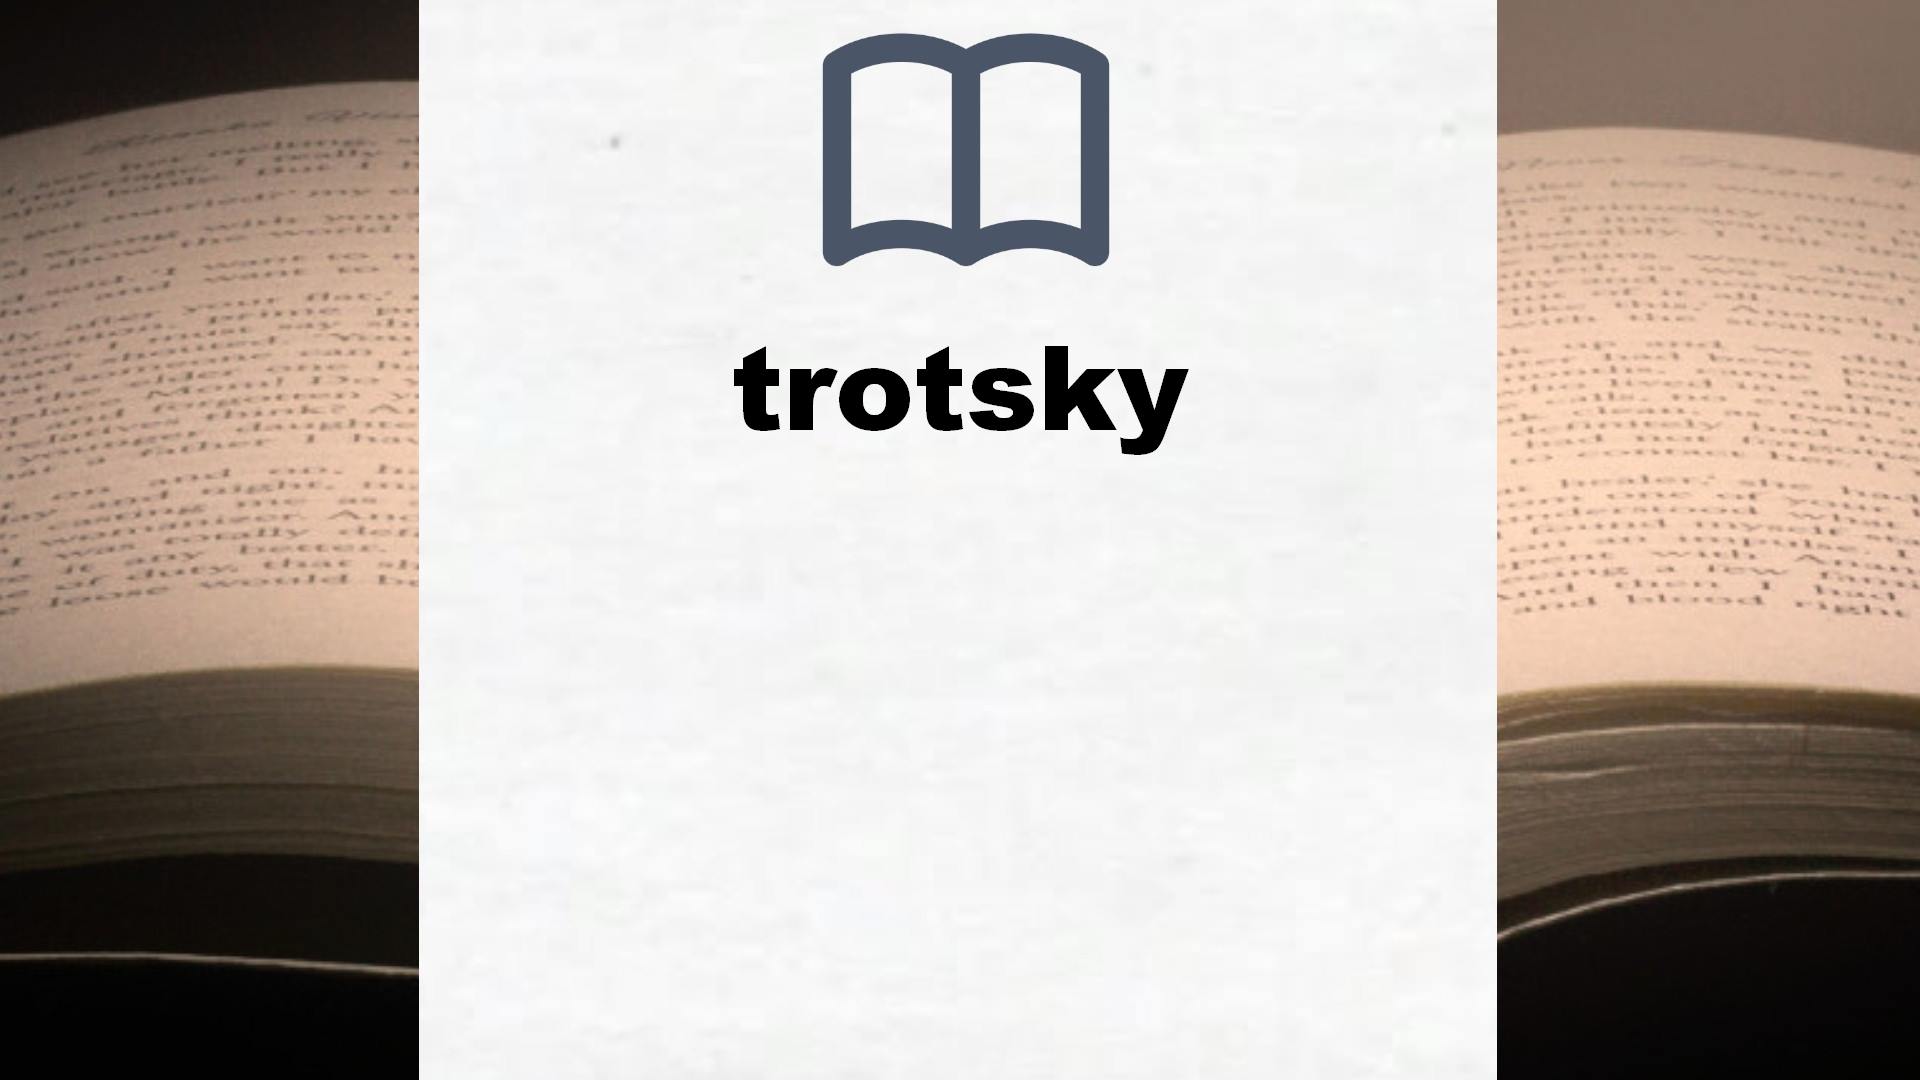 Libros sobre trotsky